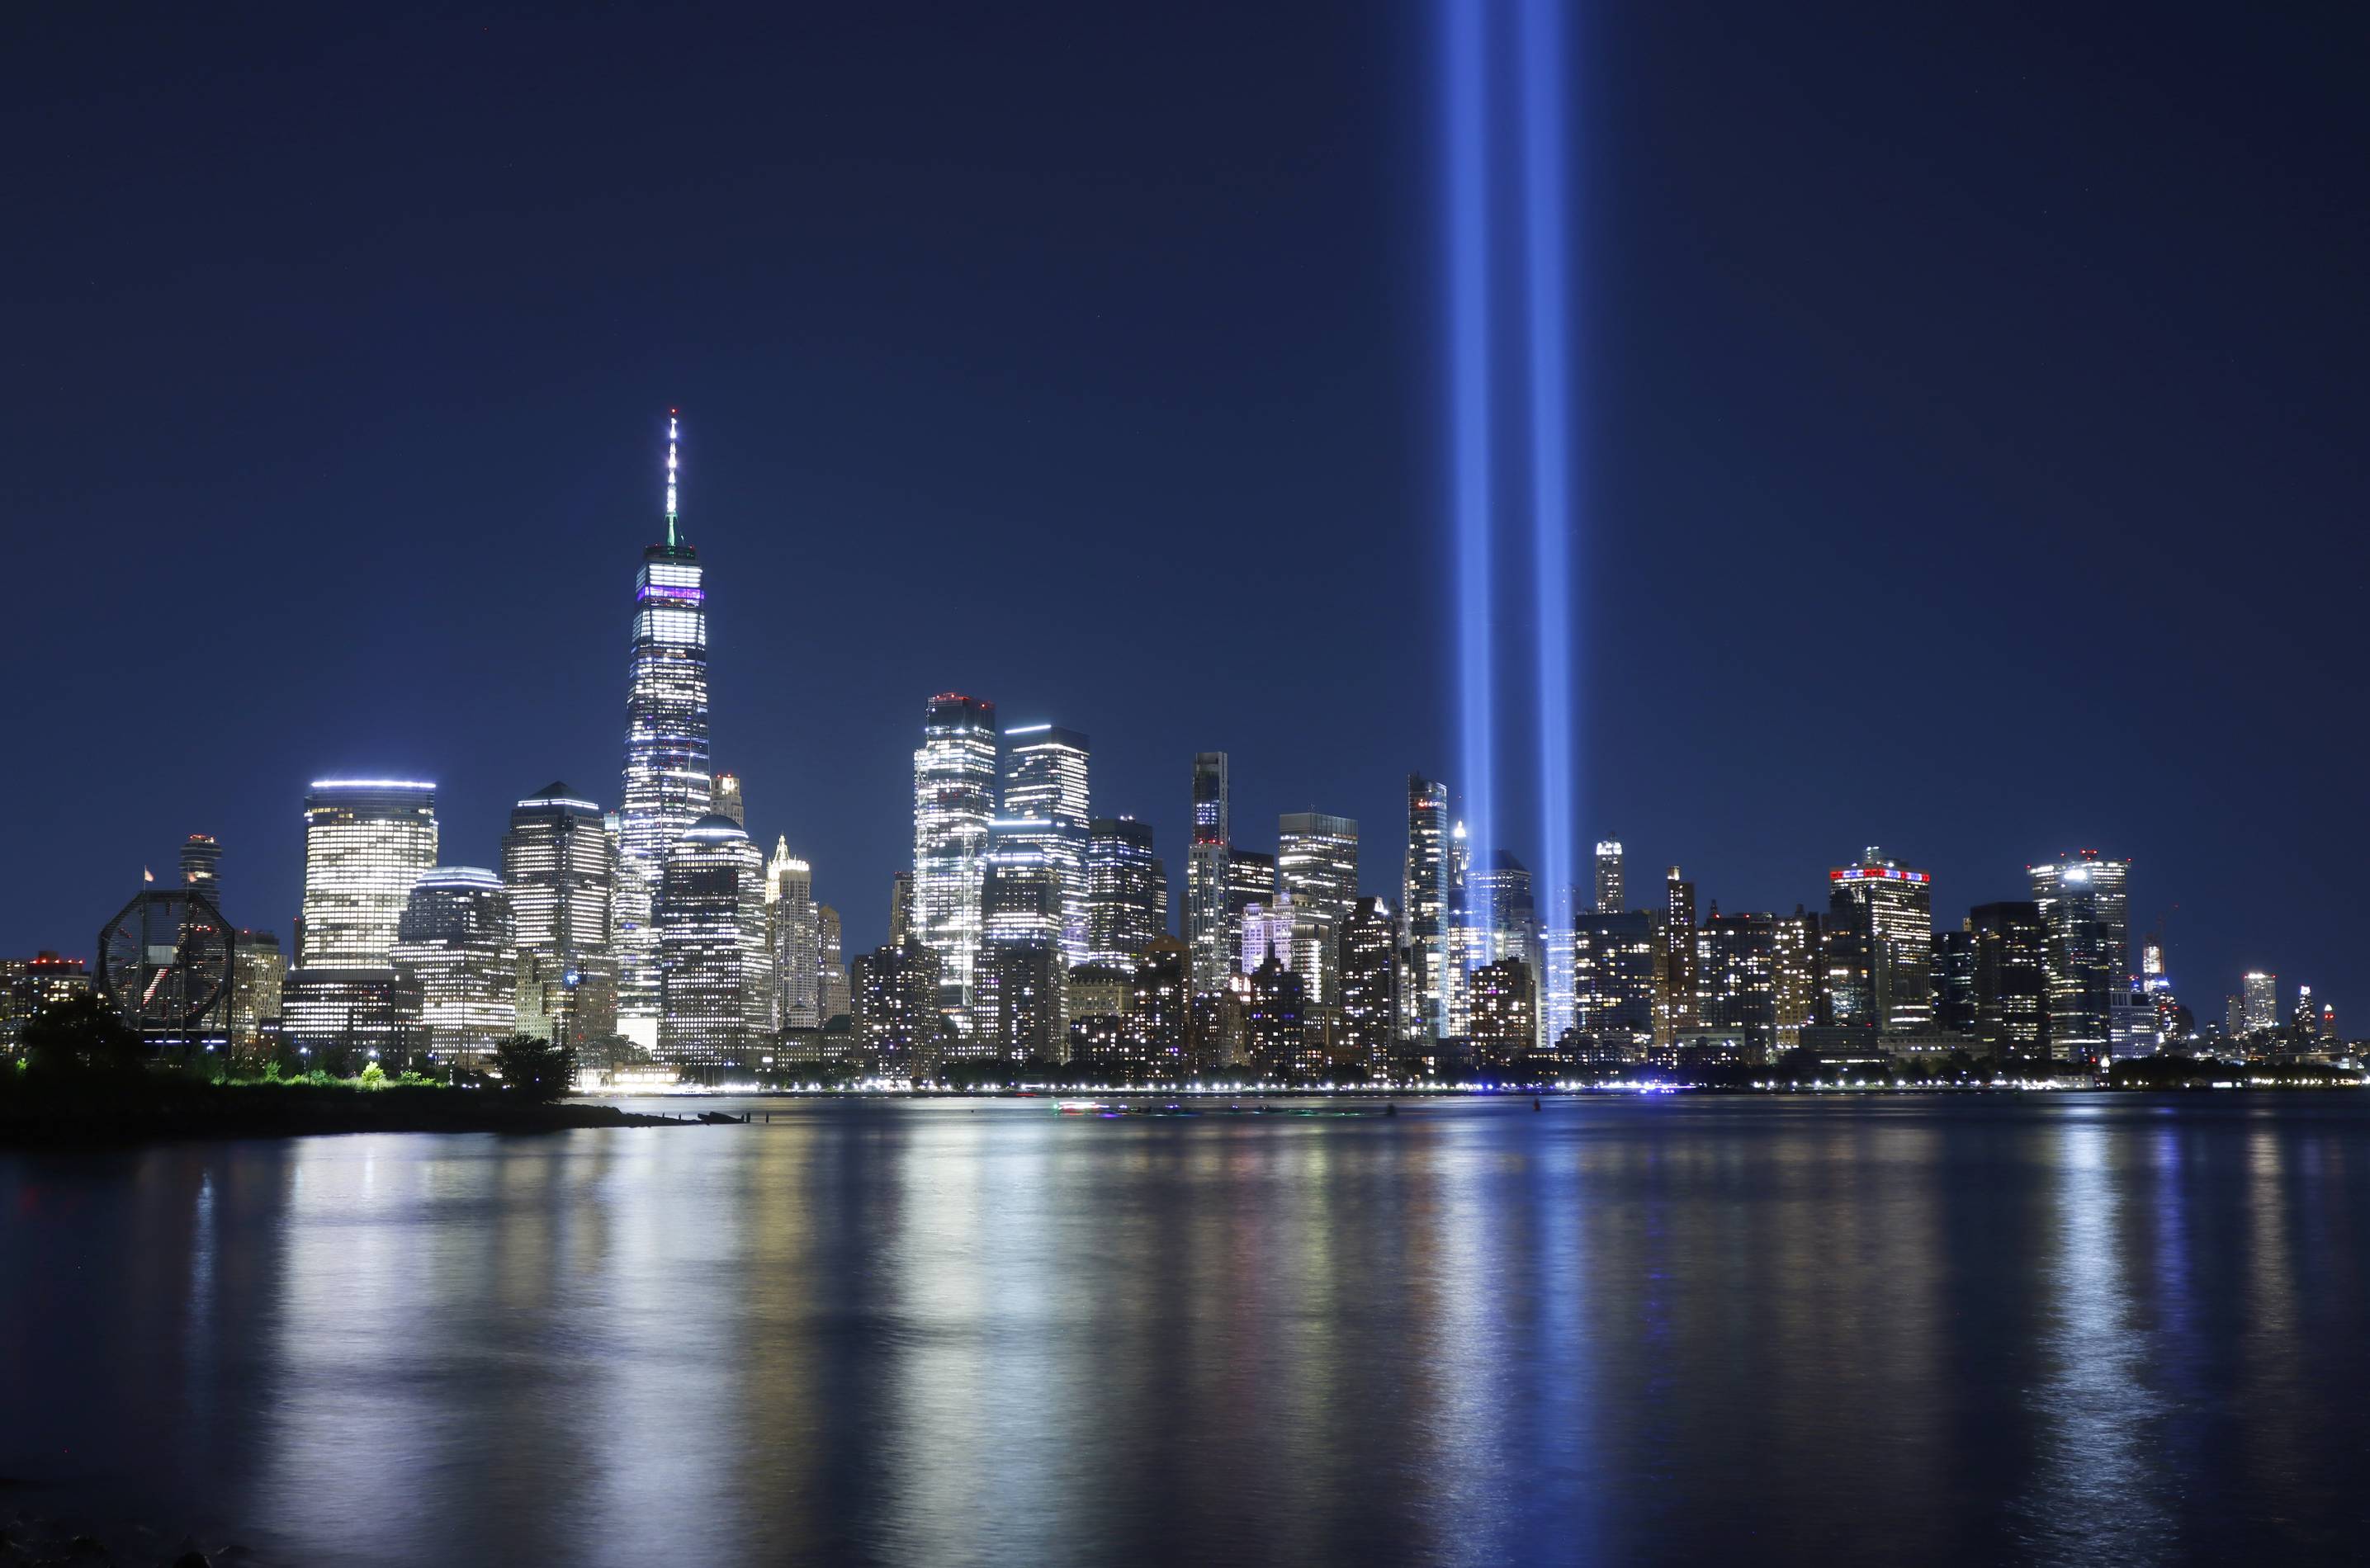 9/11 anniversary 9/11 anniversary 9/11 anniversary 